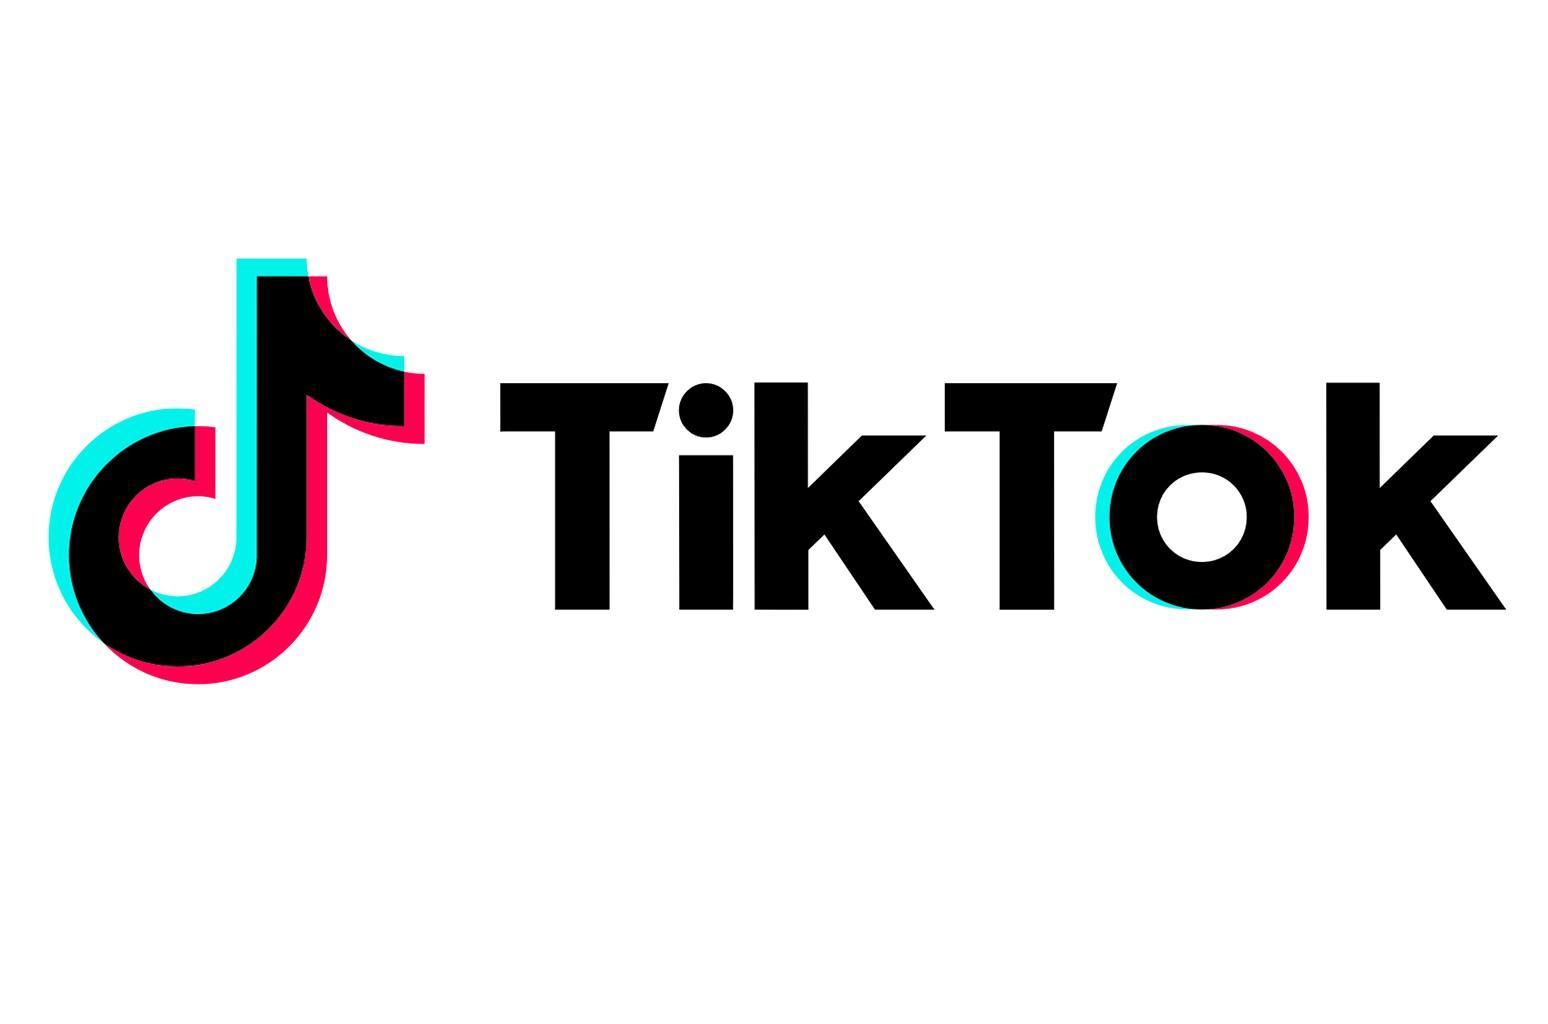 TikTok अमेरिका में निजता के मुकदमे में $ 92 मिलियन का भुगतान करने के लिए सहमत है